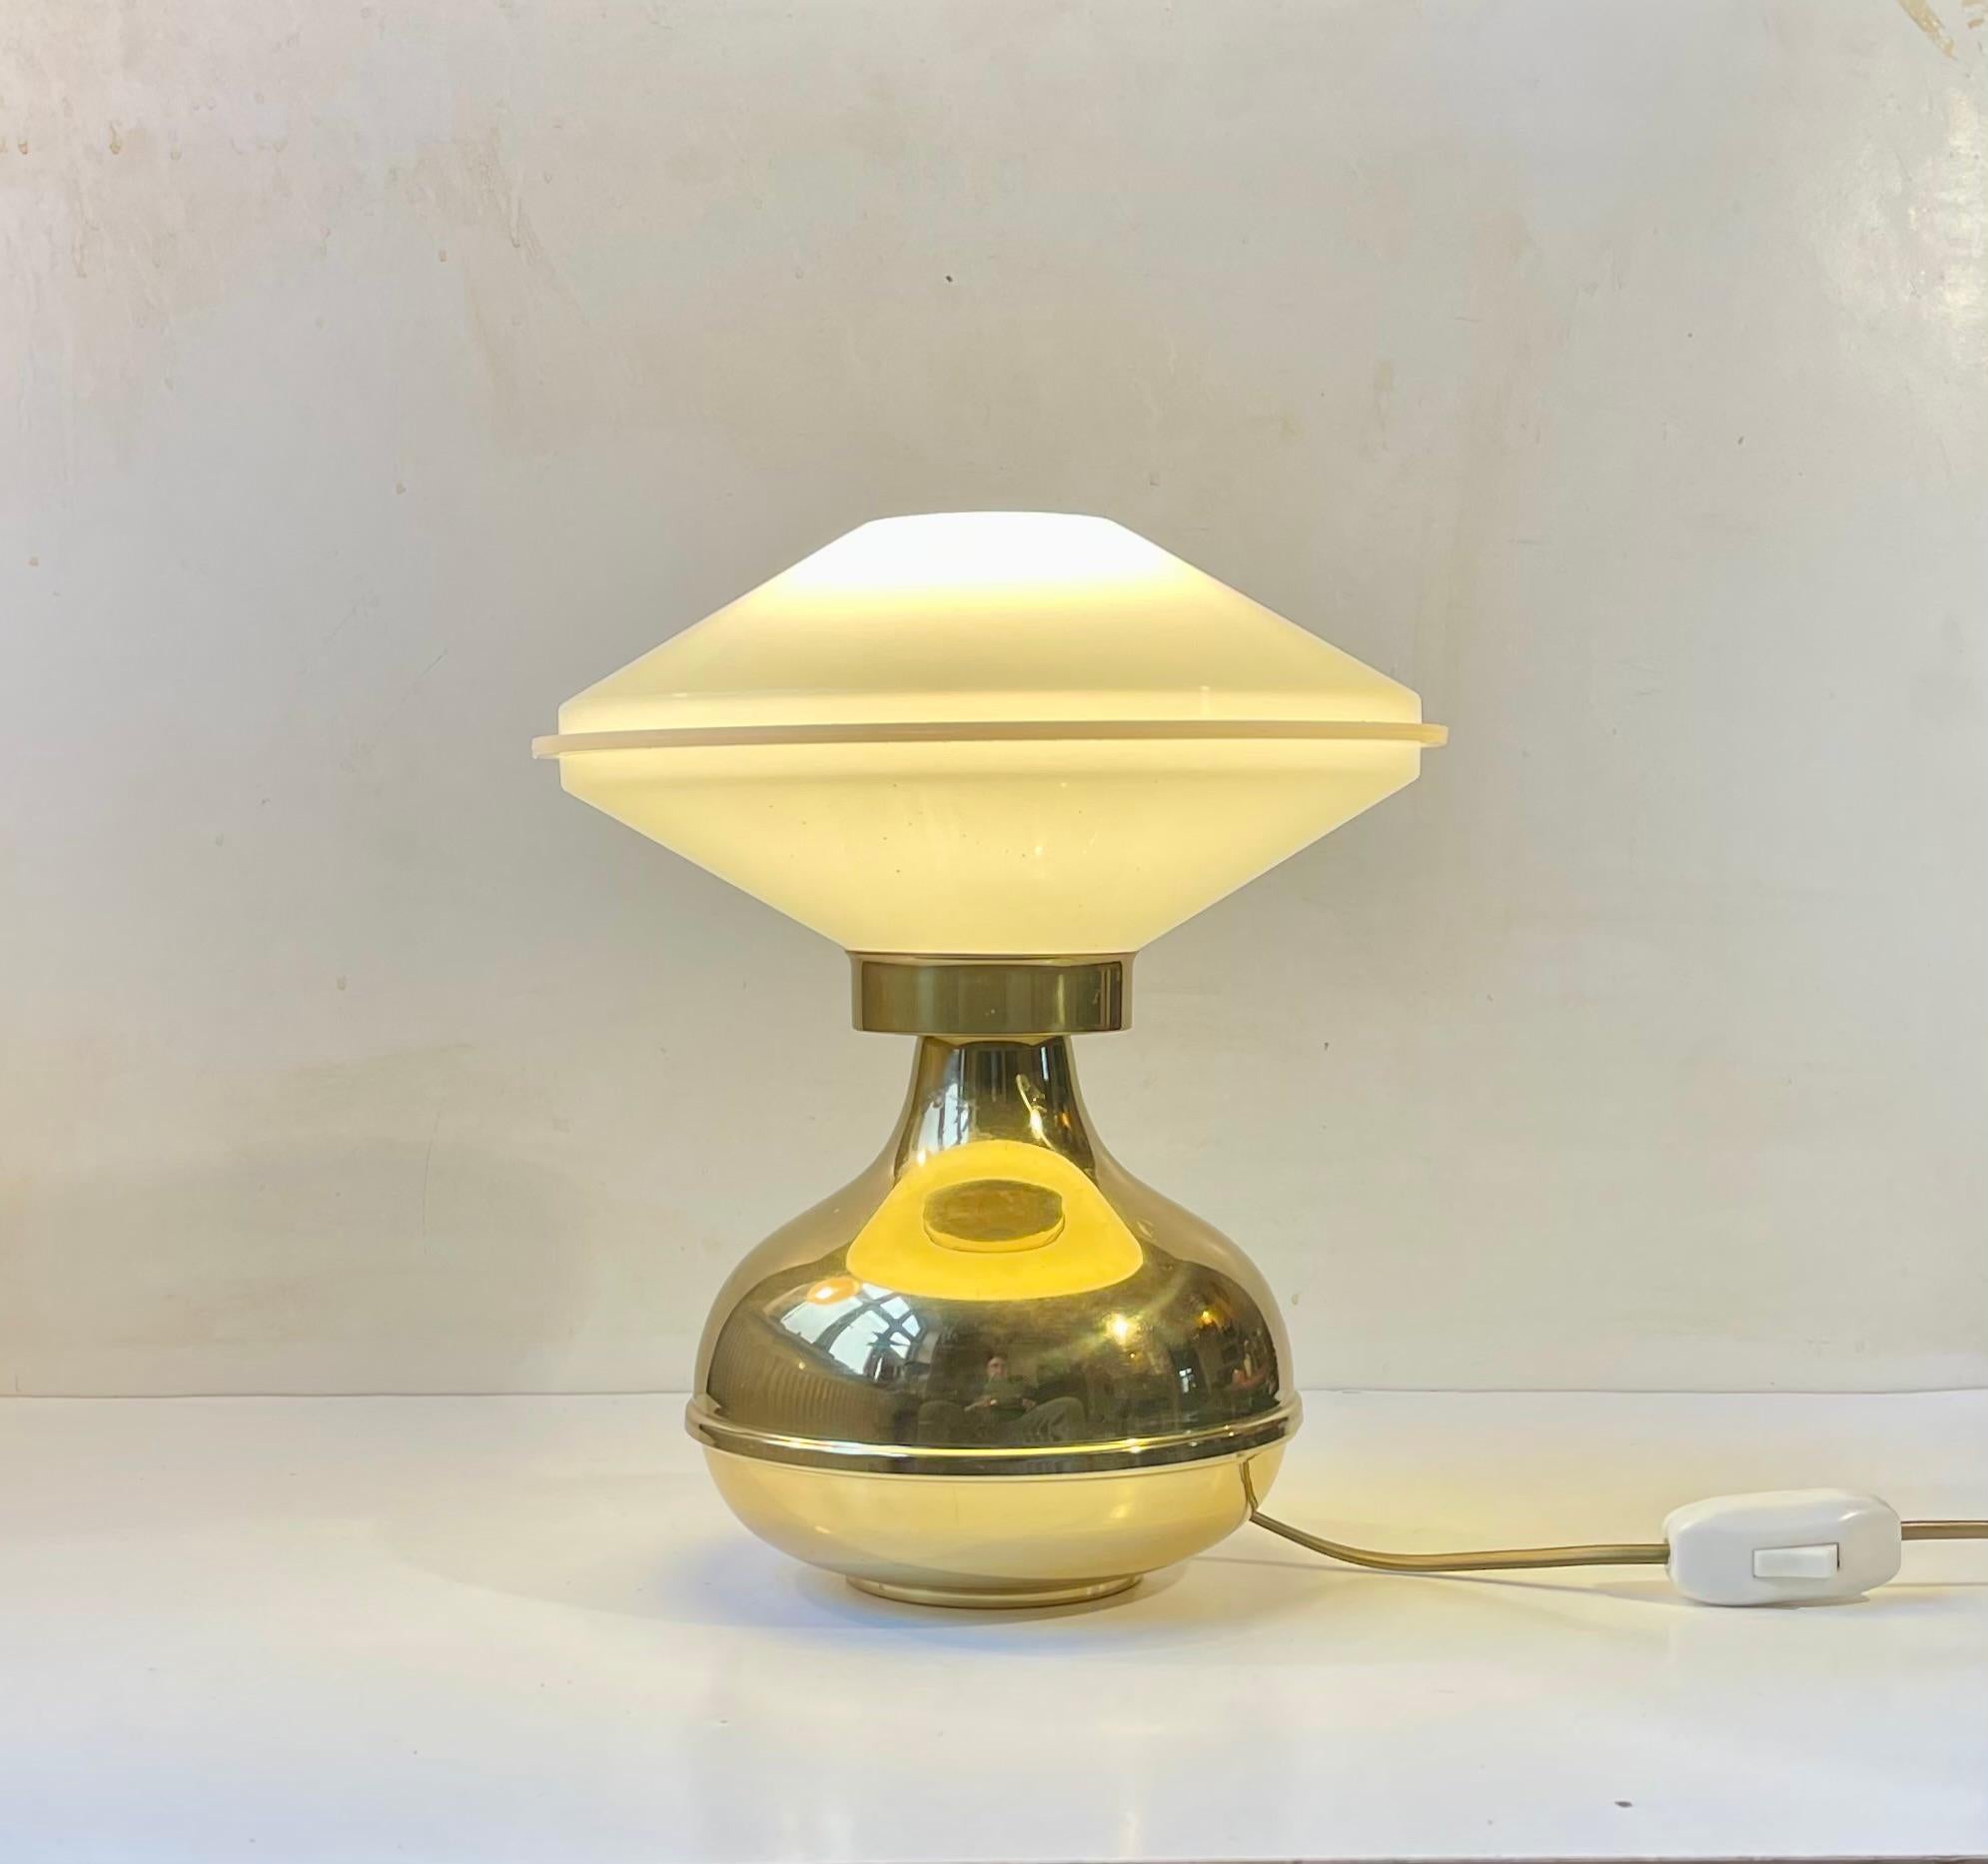 Petite lampe de table à la composition simpliste du danois ABO - Metal Art Studio. Fabriqué et conçu à la fin des années 1970. Elle est dotée d'un abat-jour en acrylique en forme d'ovni et d'un interrupteur marche/arrêt sur son cordon. Il ressemble